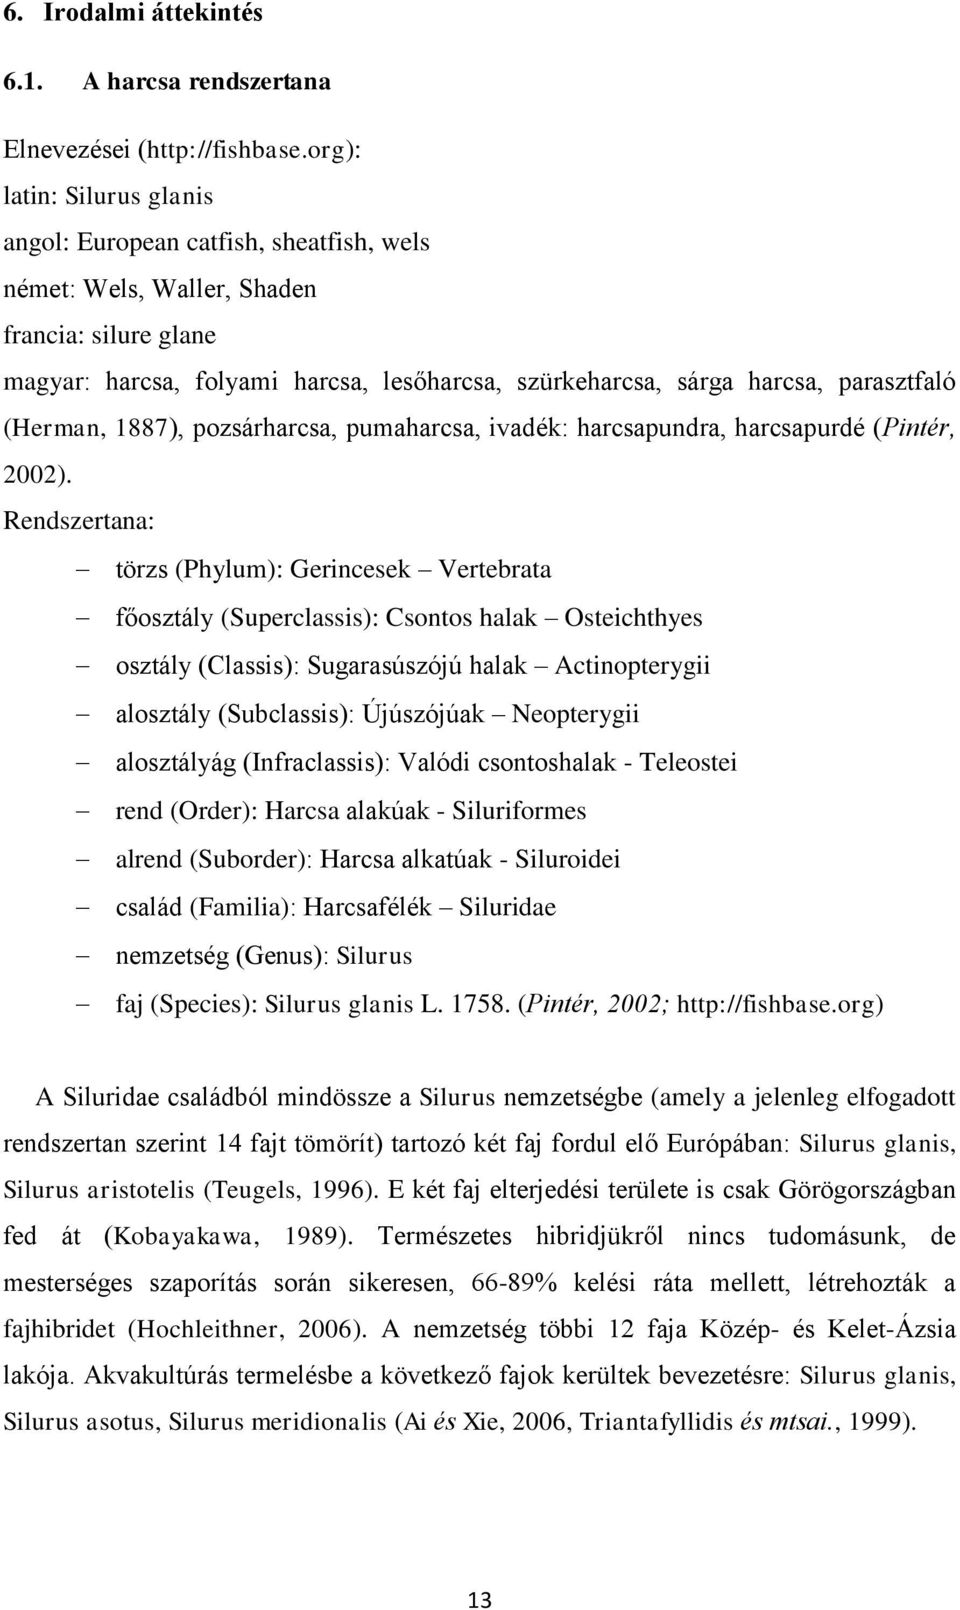 pozsárhrcs, pumhrcs, ivdék: hrcspundr, hrcspurdé (Pintér, 2002).